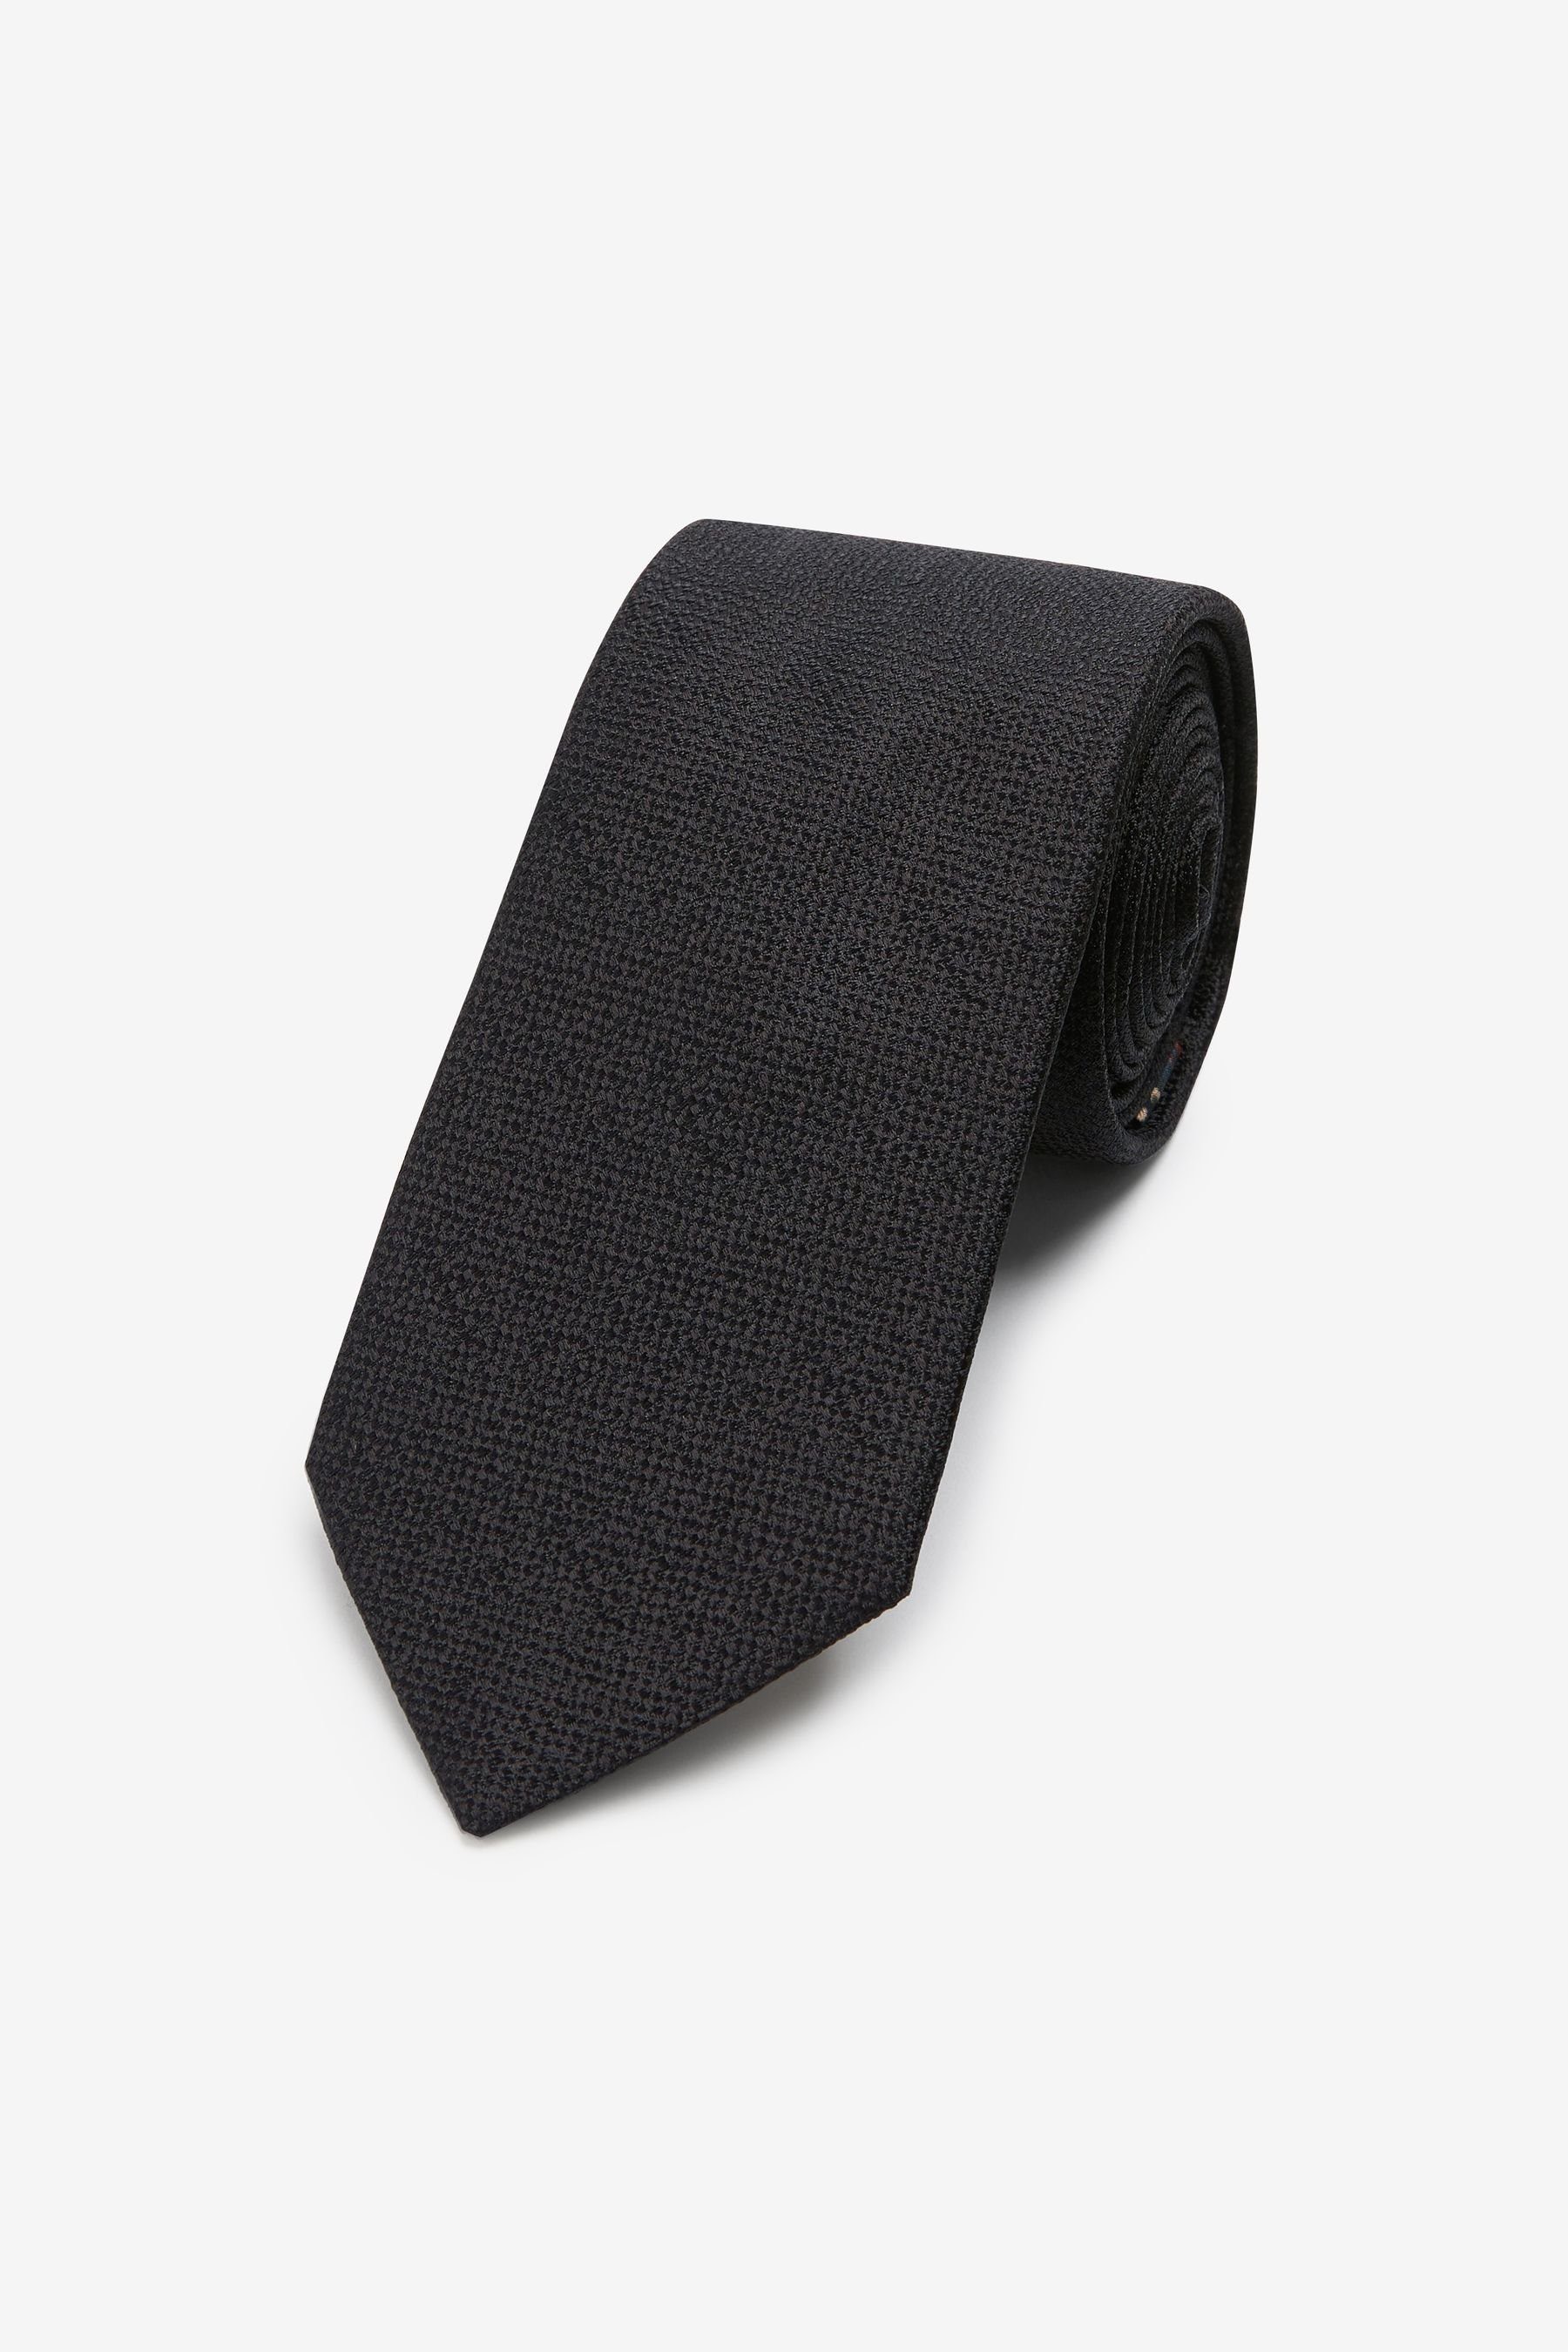 Next Krawatte Signature-Krawatte, hergestellt (1-St) Black in Italien